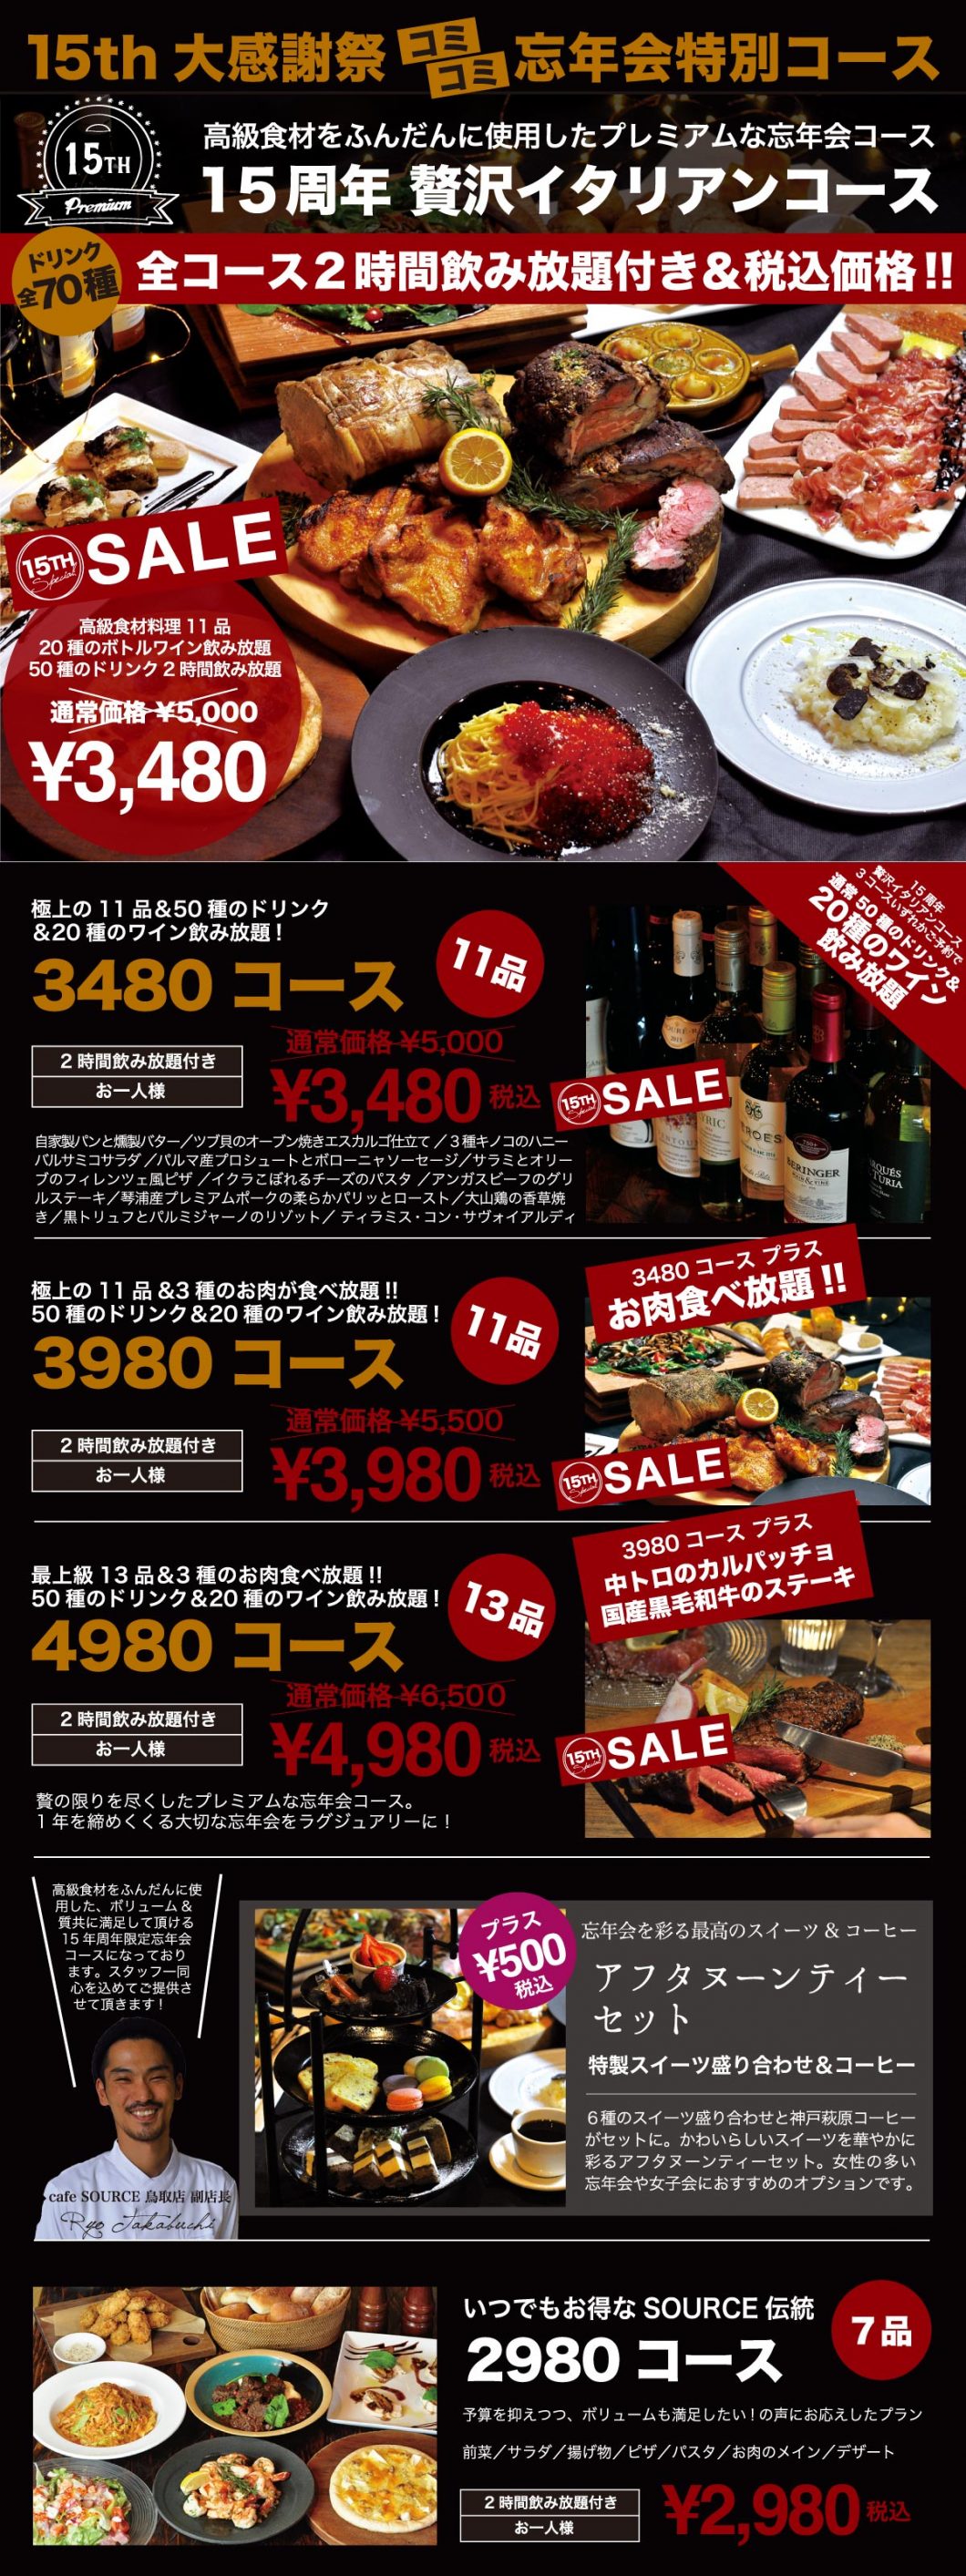 倉吉 カフェソース 忘年会 飲み放題・食べ放題コースプラン 2017